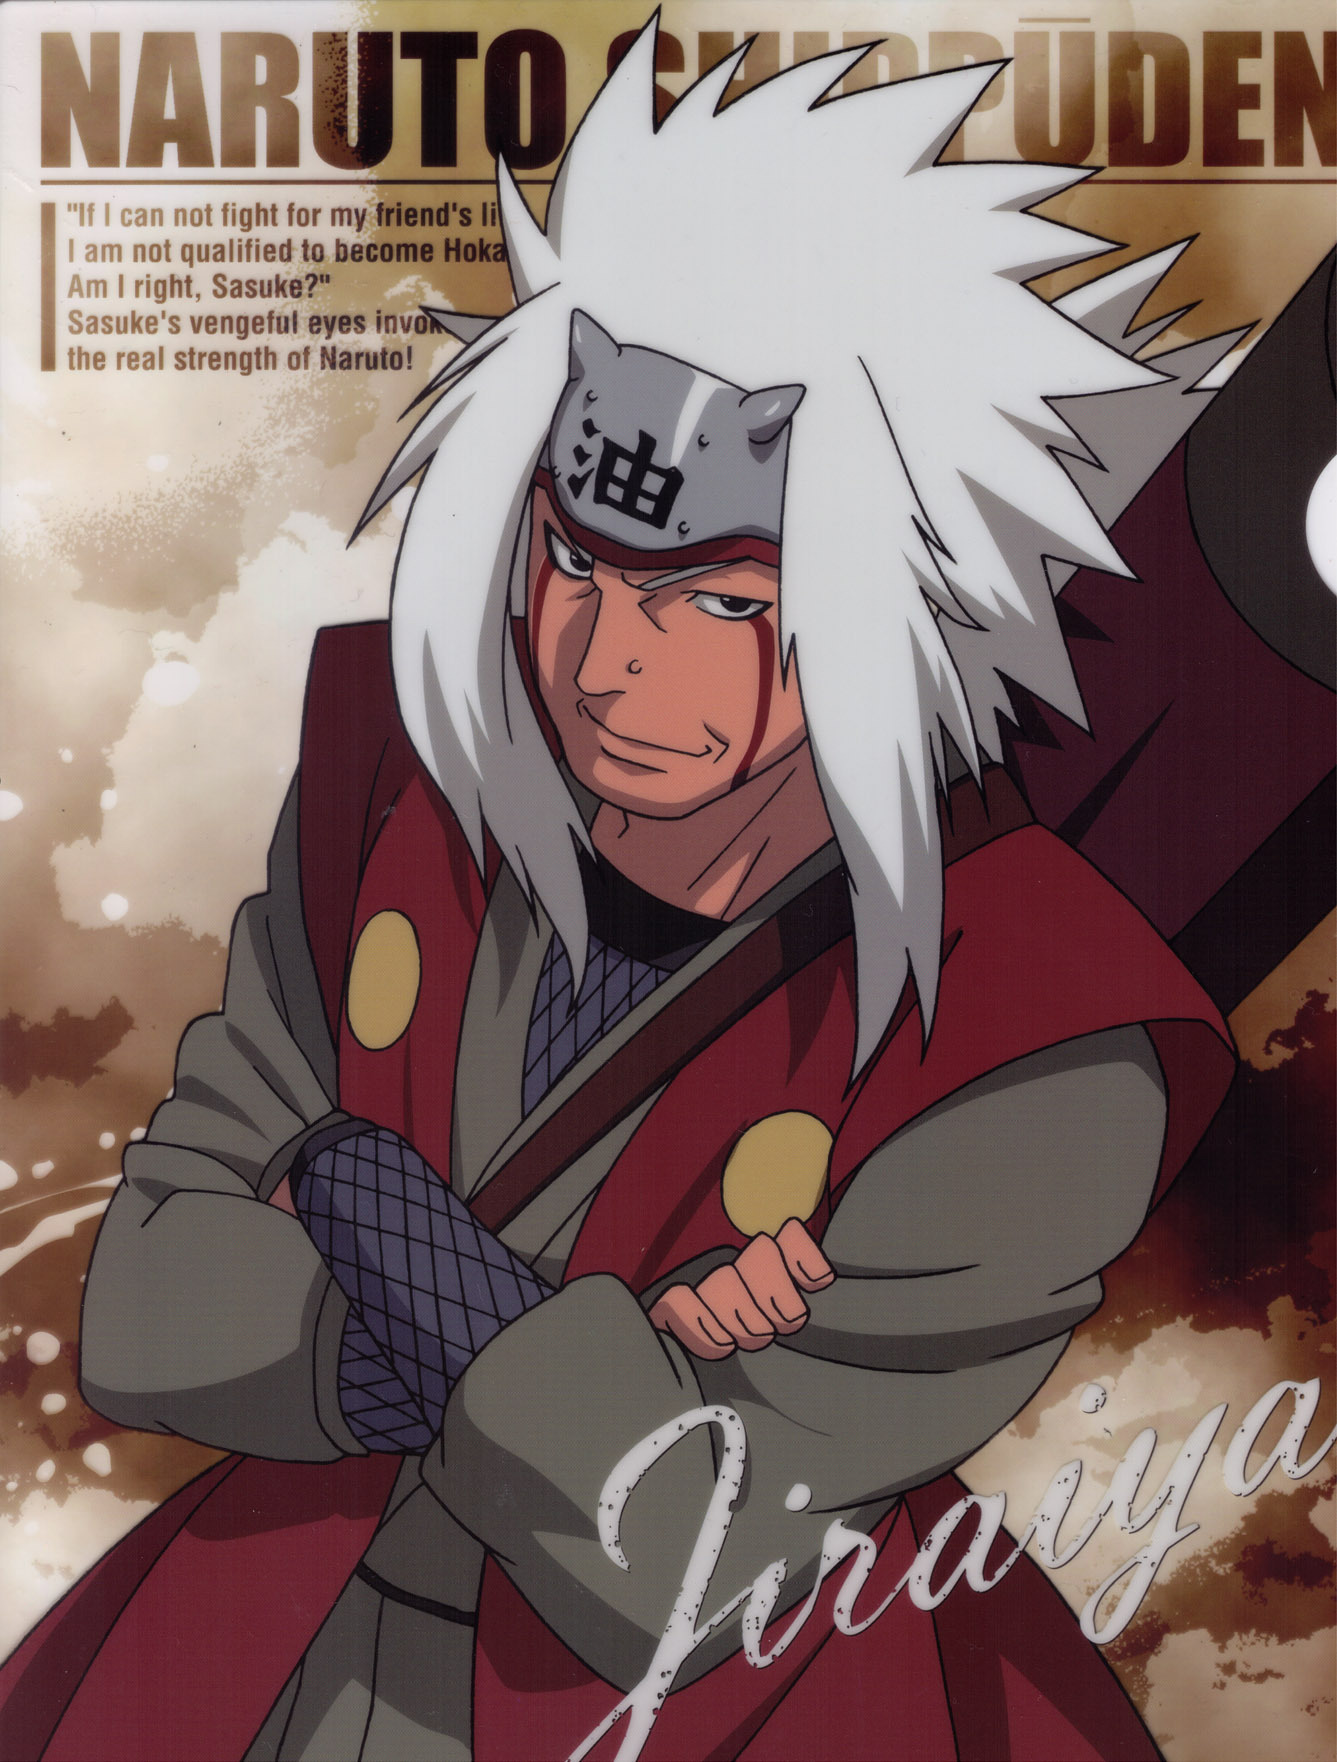 Naruto Shippuden Jiraiya Wallpaper - Anime Full HD Wallpaper